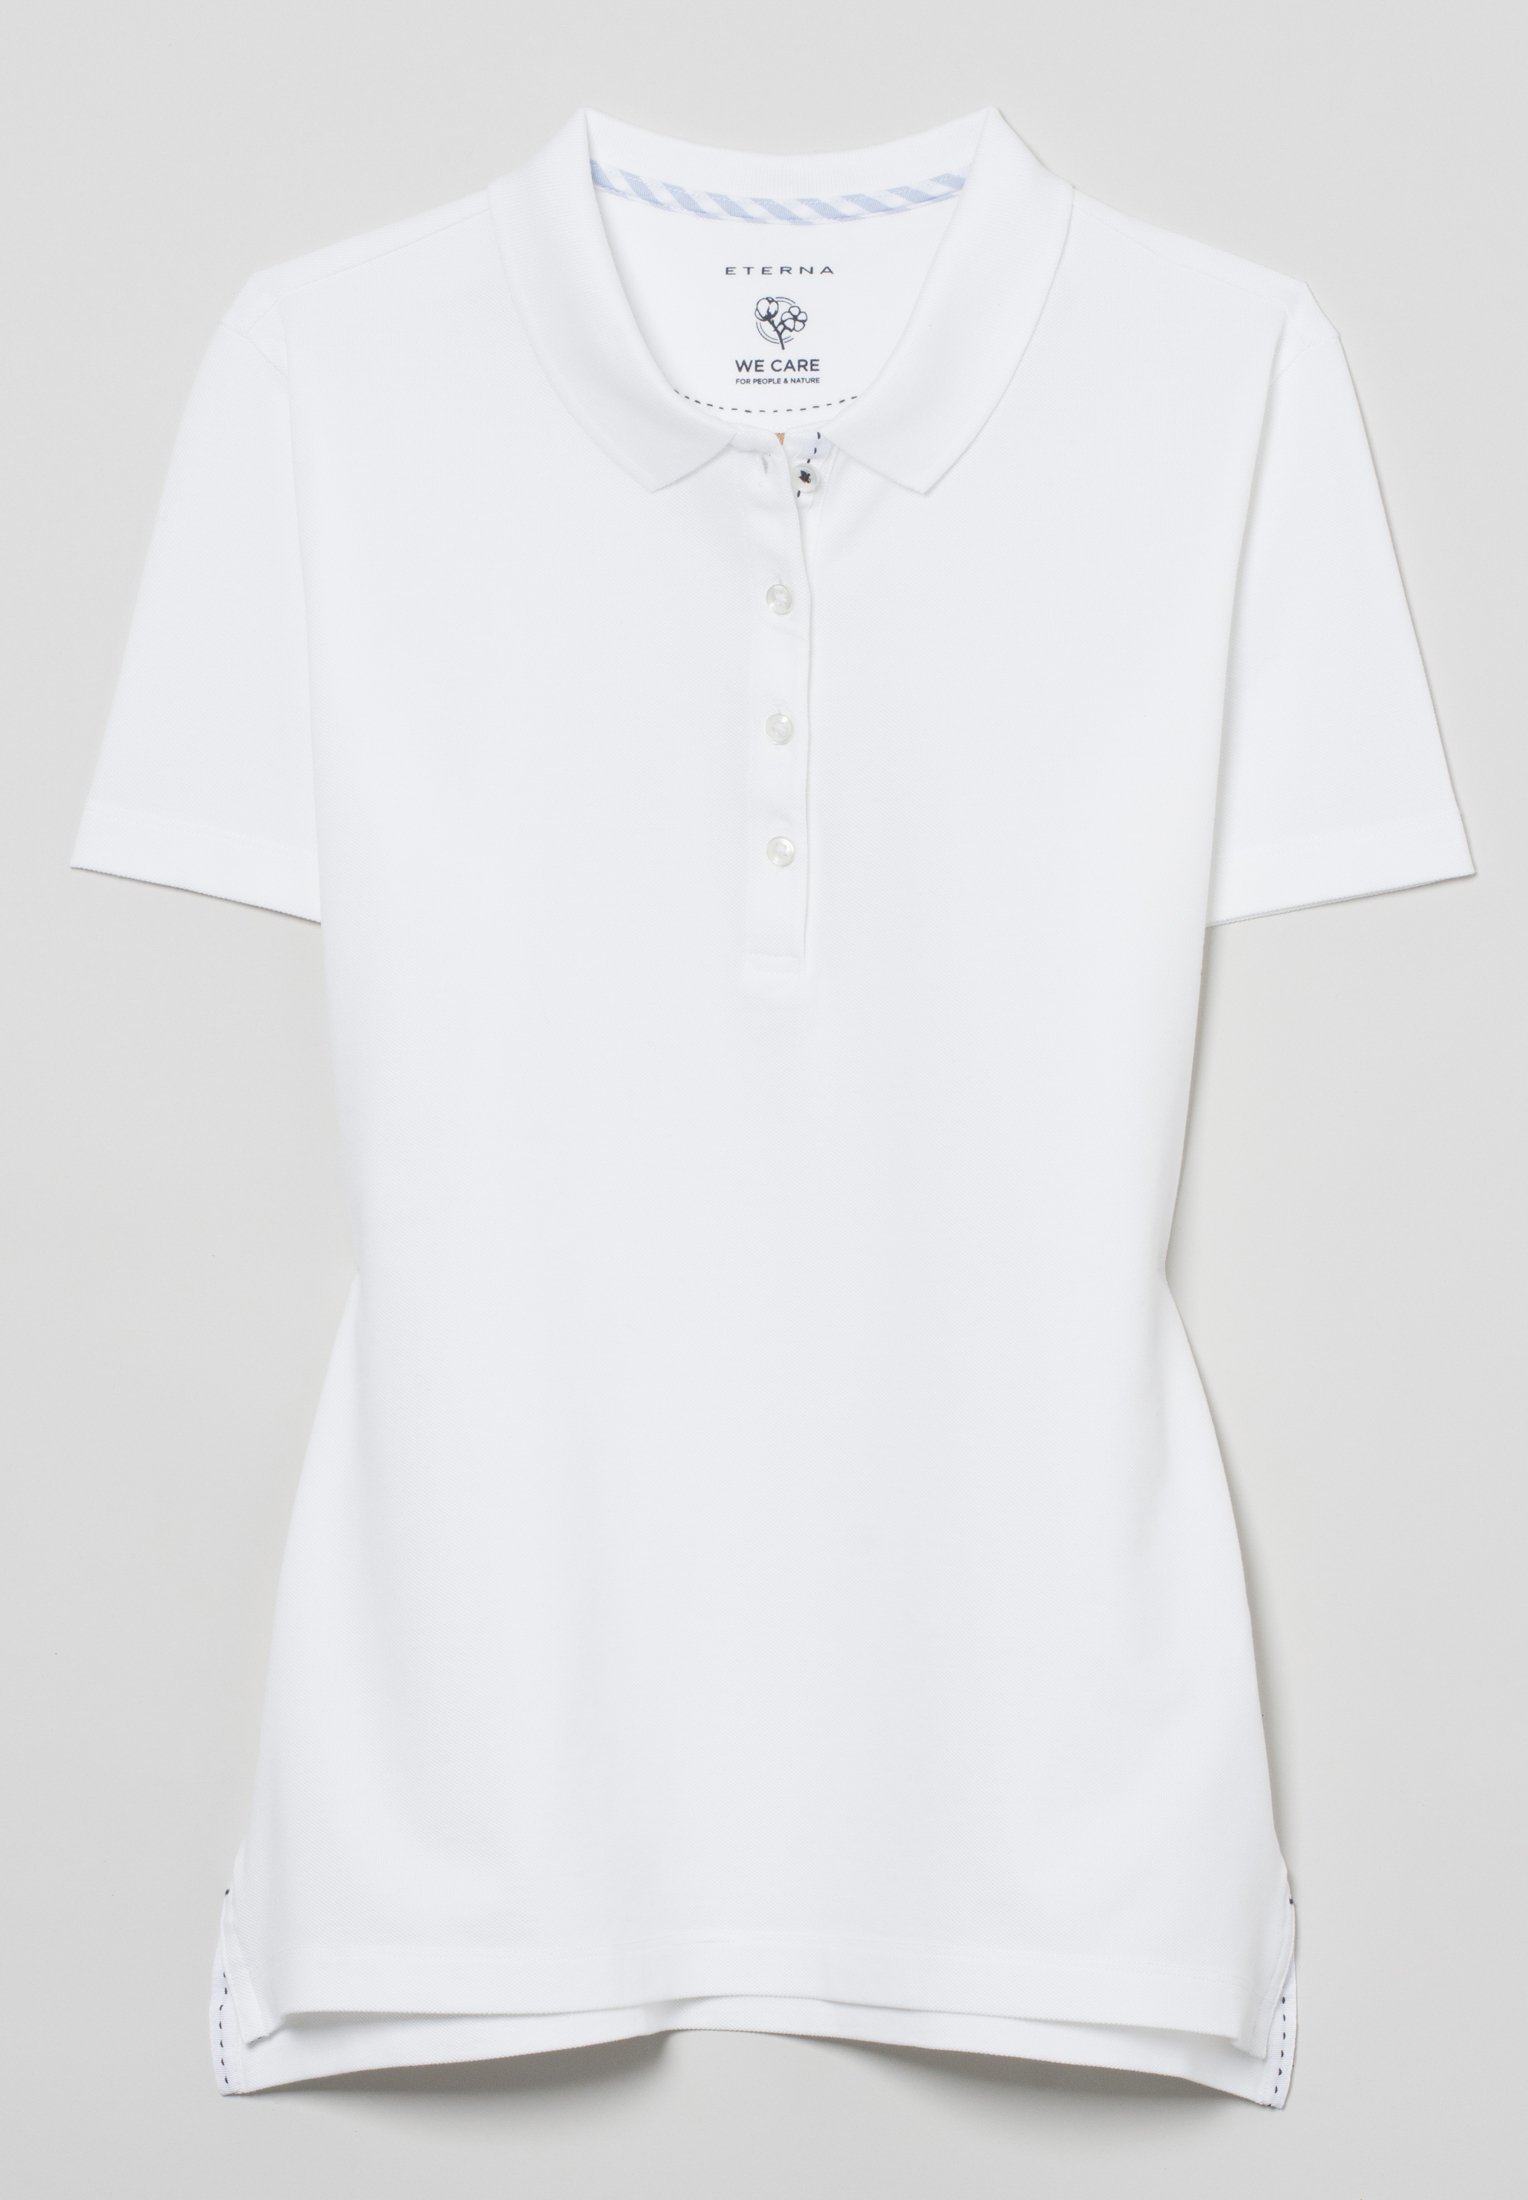 ETERNA CLASSIC FIT Poloshirt weiss pique 5535-00-H530 | Eterna | Poloshirts  | Damen Bekleidung | Jeans-Manufaktur